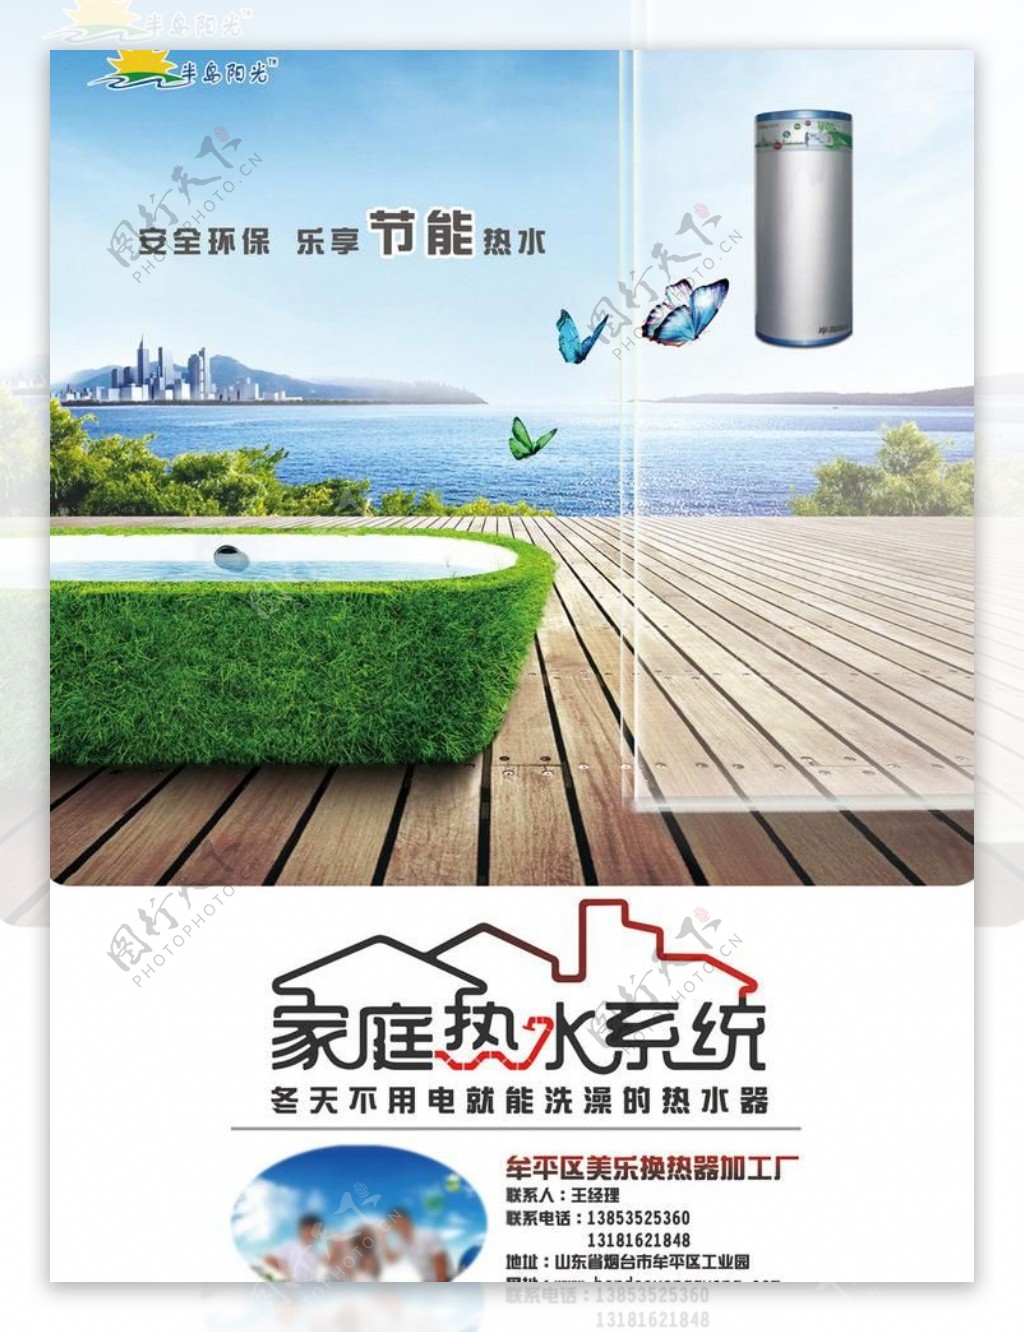 家庭热水系统广告海报PSD素